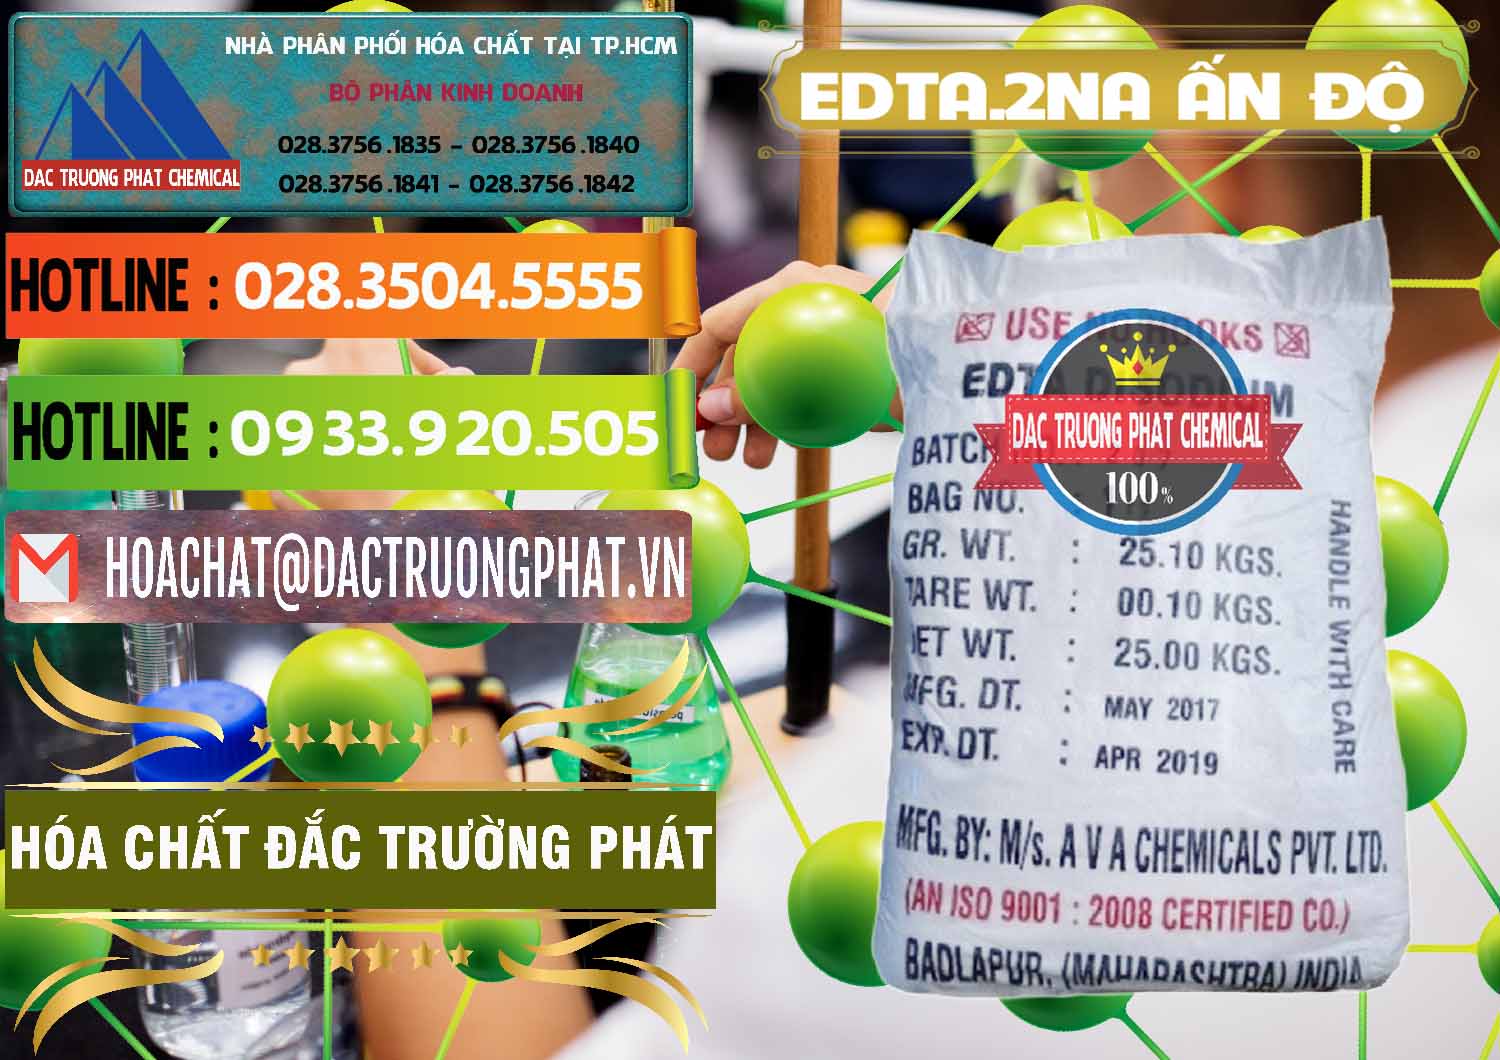 Cty bán ( cung cấp ) EDTA.2NA - Ethylendiamin Tetraacetic Ấn Độ India - 0416 - Cty chuyên bán & cung cấp hóa chất tại TP.HCM - cungcaphoachat.com.vn